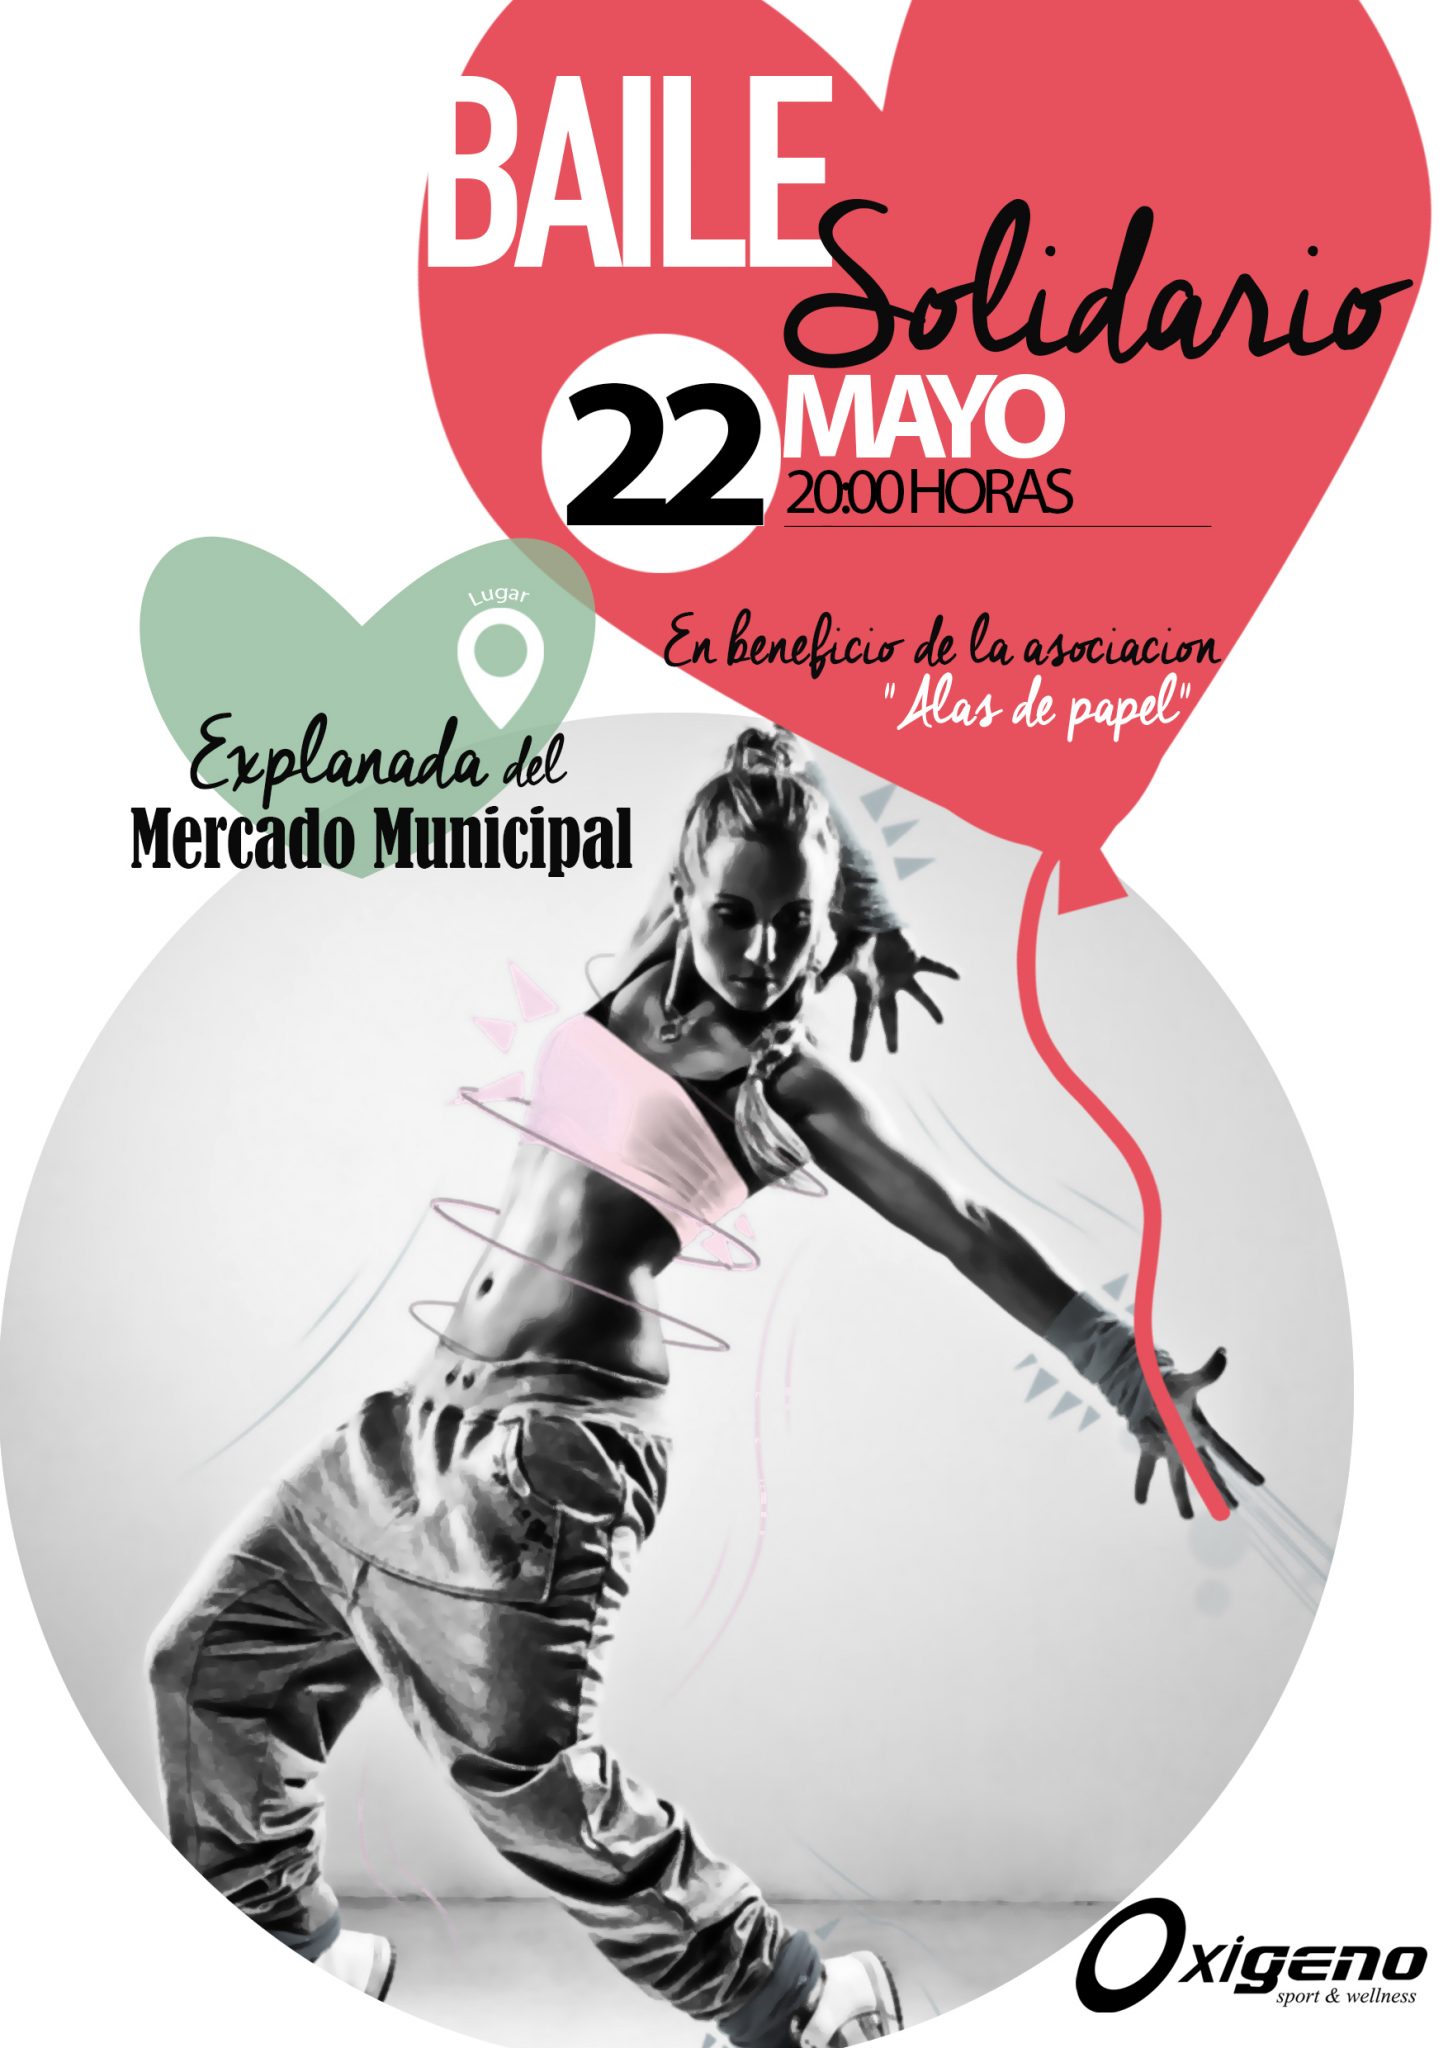 La Solana acogerá la II edición del Maratón de Baile Solidario